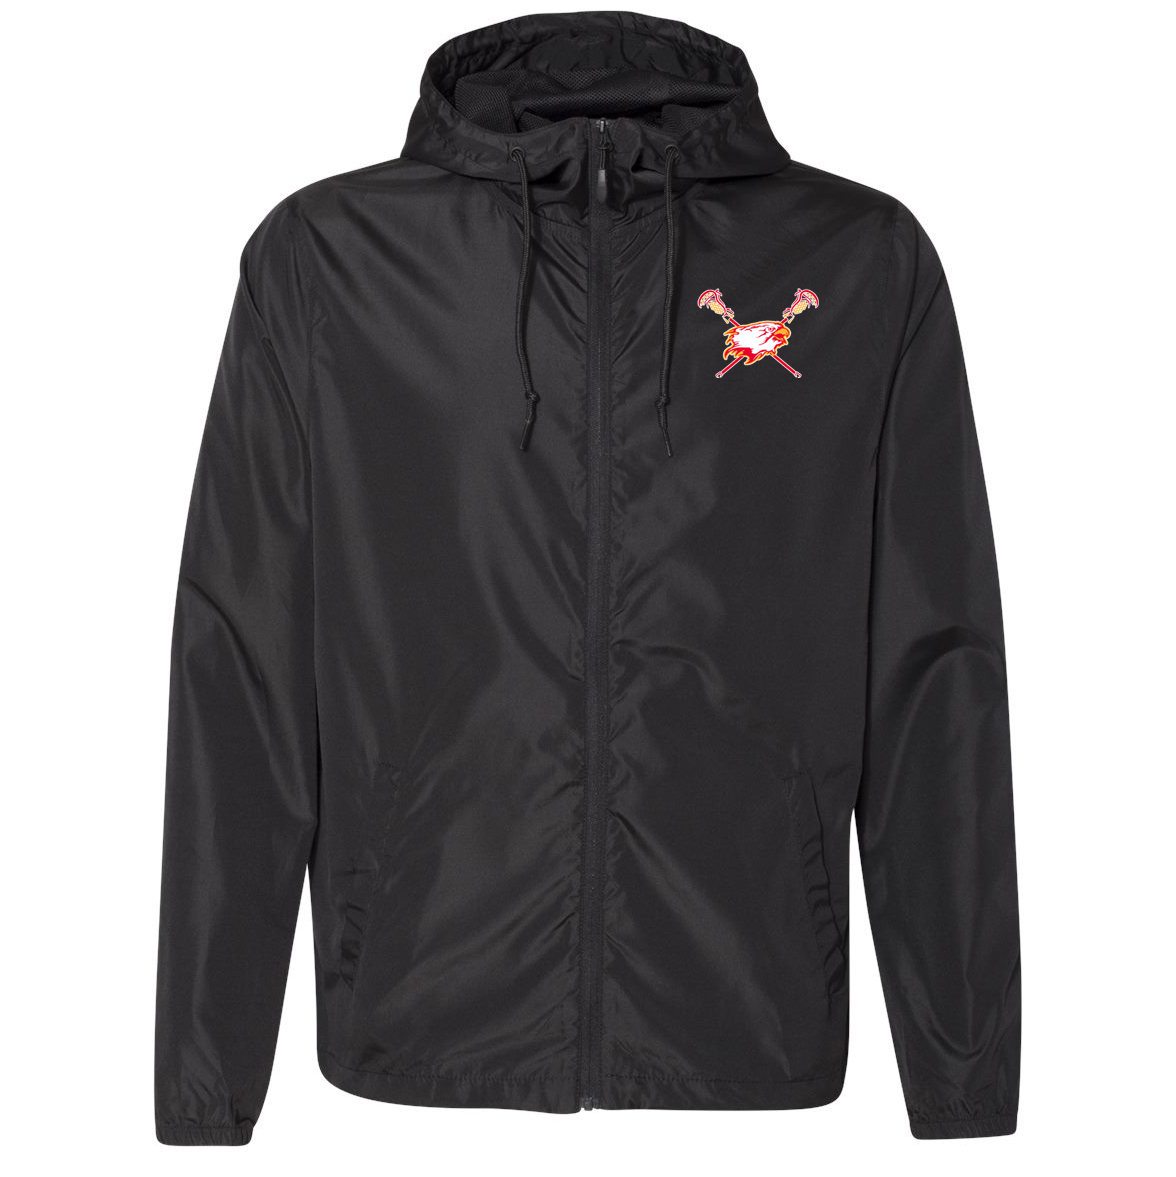 Falcons Lacrosse Club Lightweight Windbreaker Full-Zip Jacket